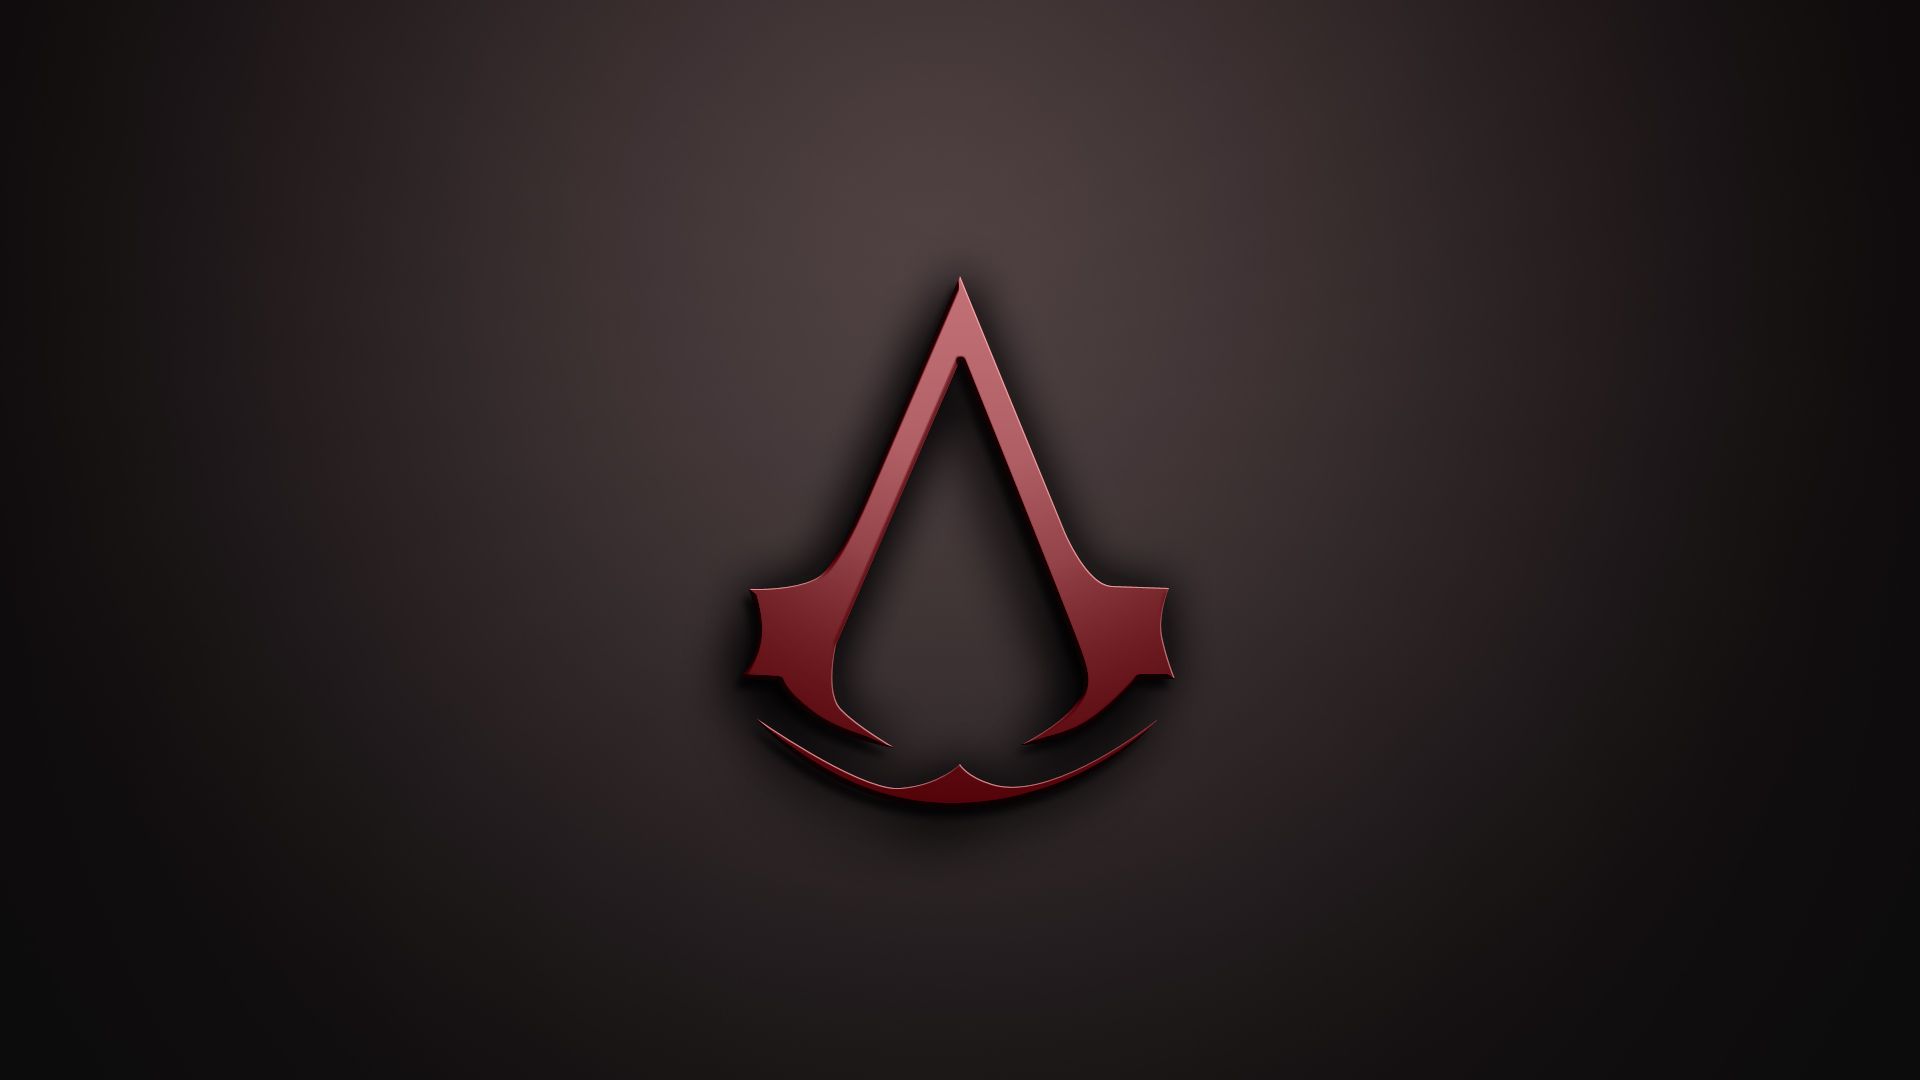 Geek Wallpaper. Assassins creed logo, Assassins creed game